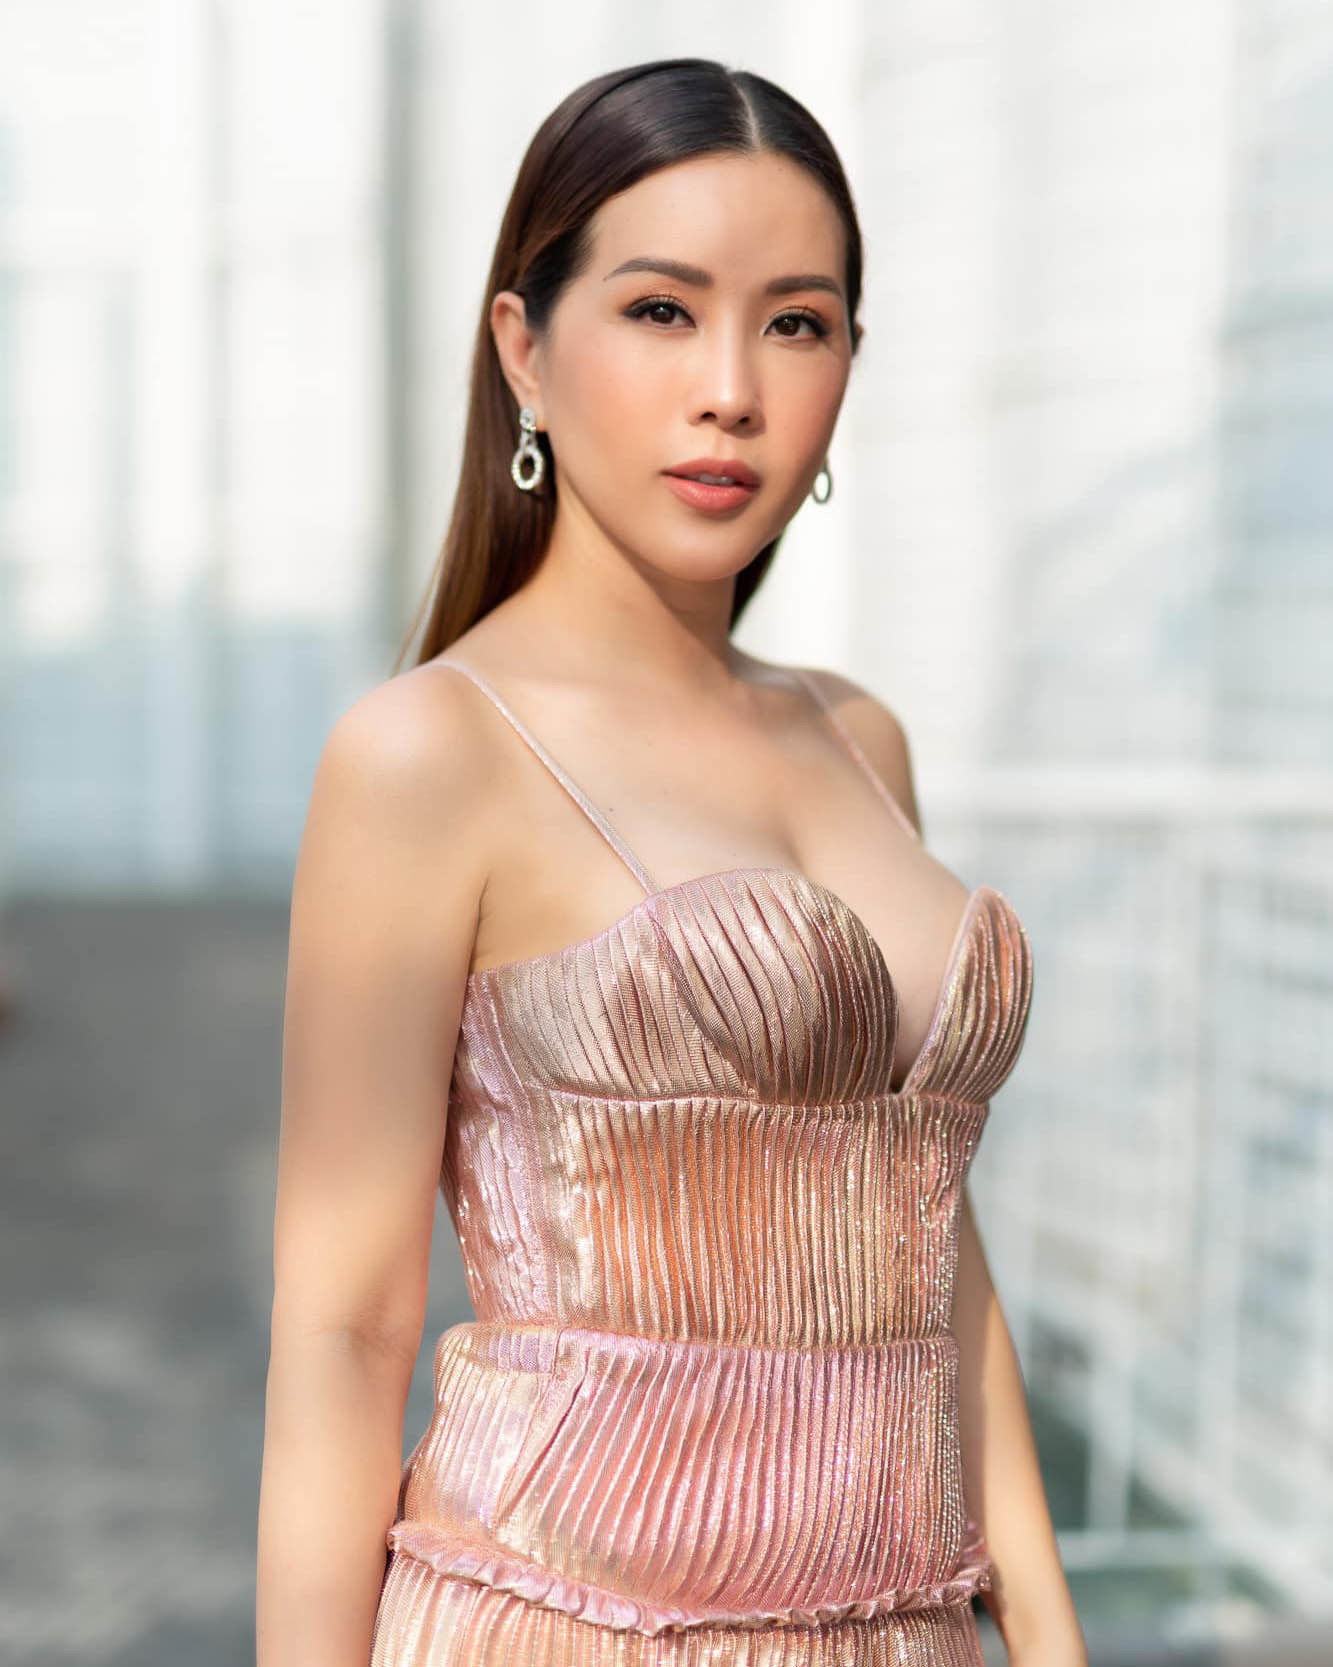 Hoa hậu Thu Hoài tuổi 44: Xinh đẹp, giàu có, hạnh phúc bên bạn trai kém 10 tuổi